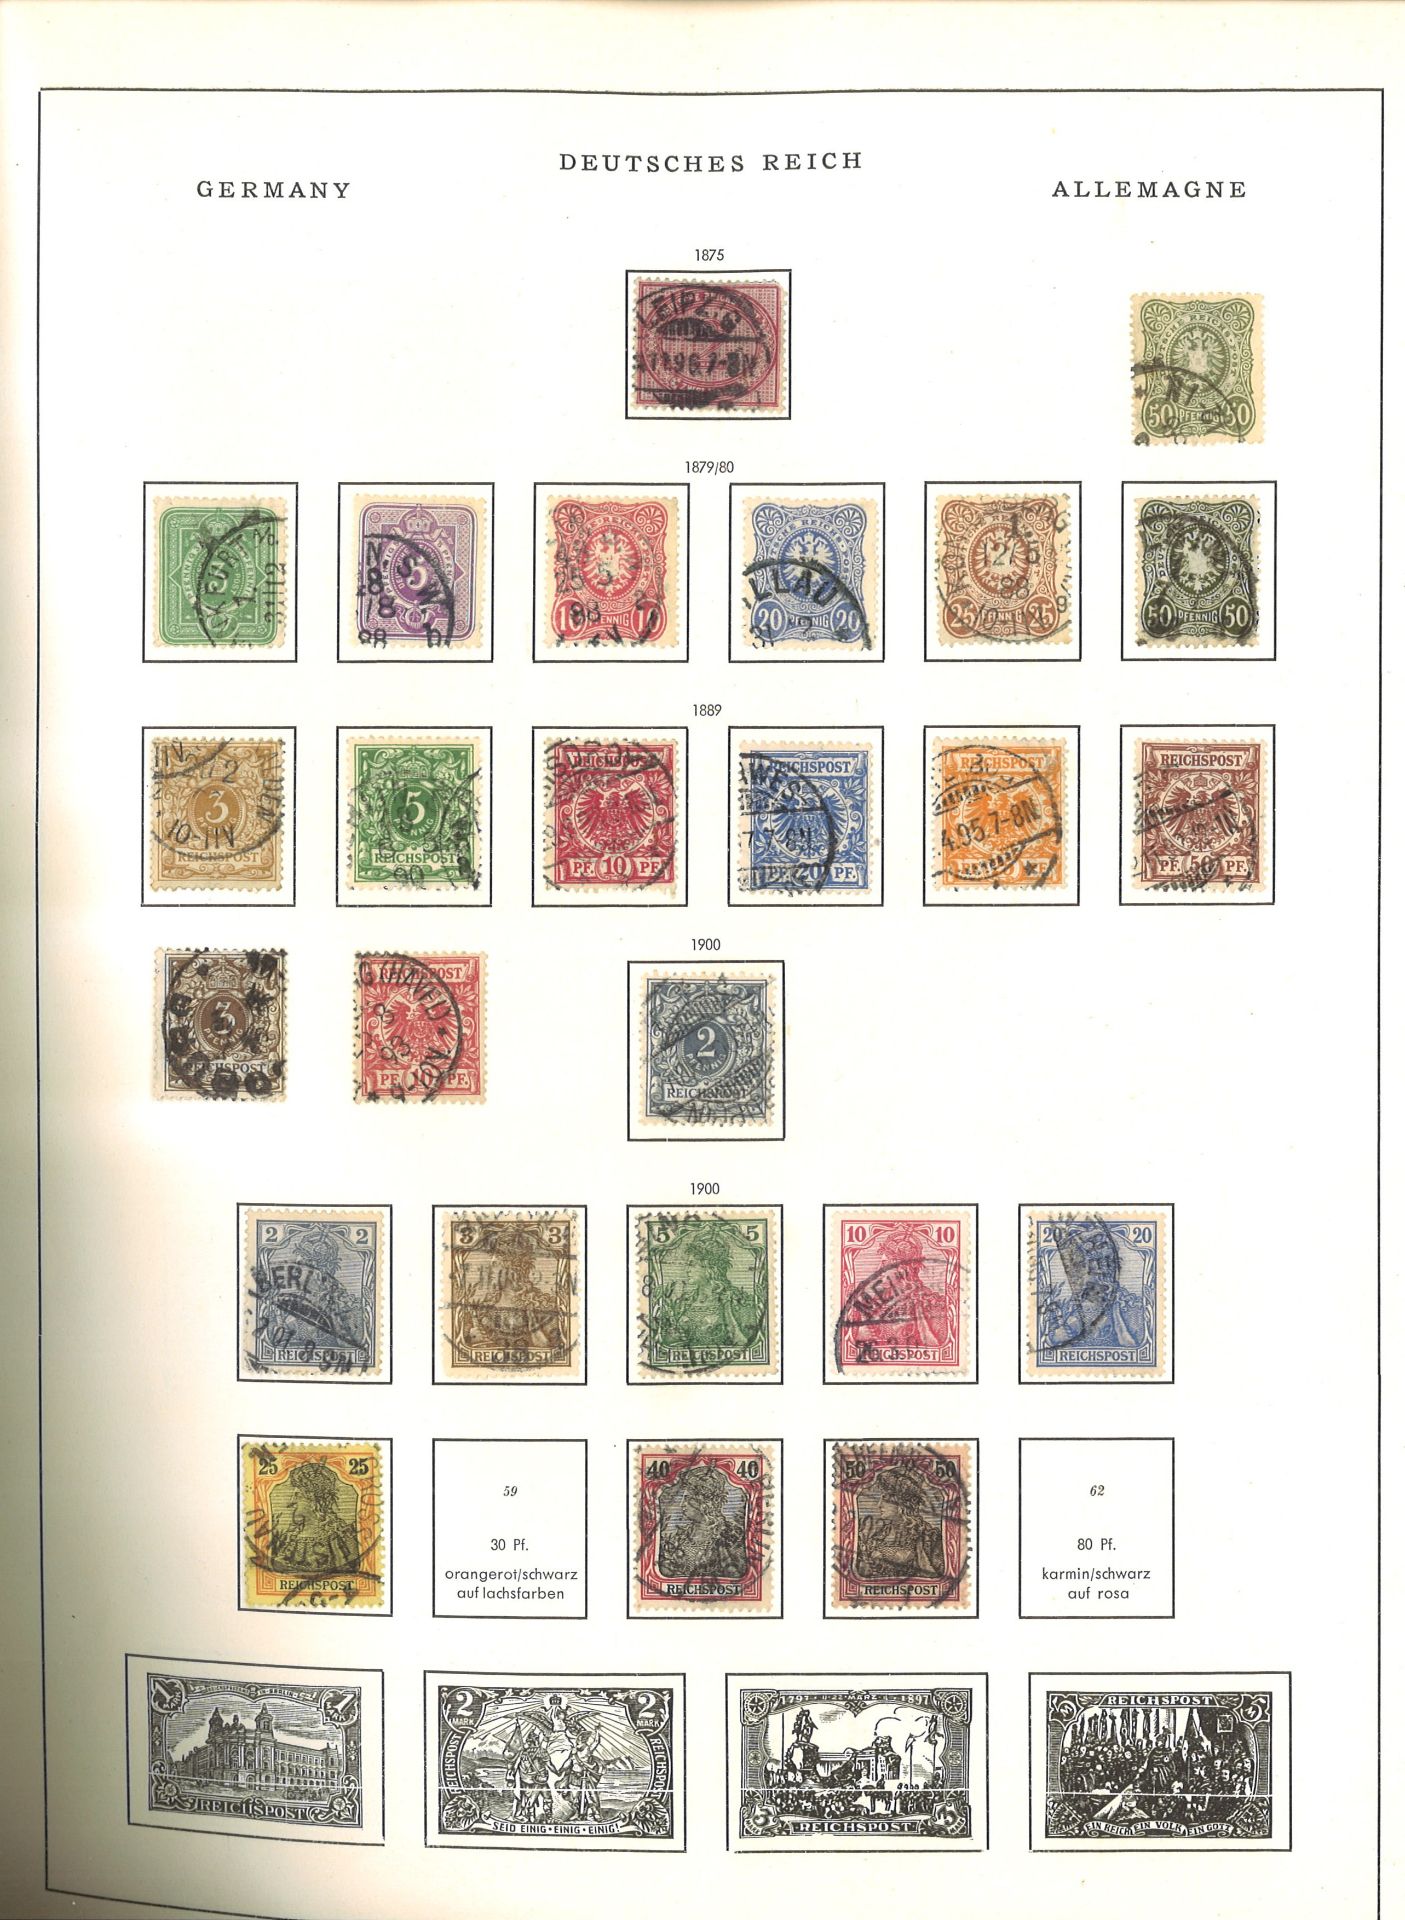 Deutschland, dickes Schwaneberger Briefmarken Album 1964, dabei Altdeutschland, Deutsches Reich, - Bild 4 aus 18